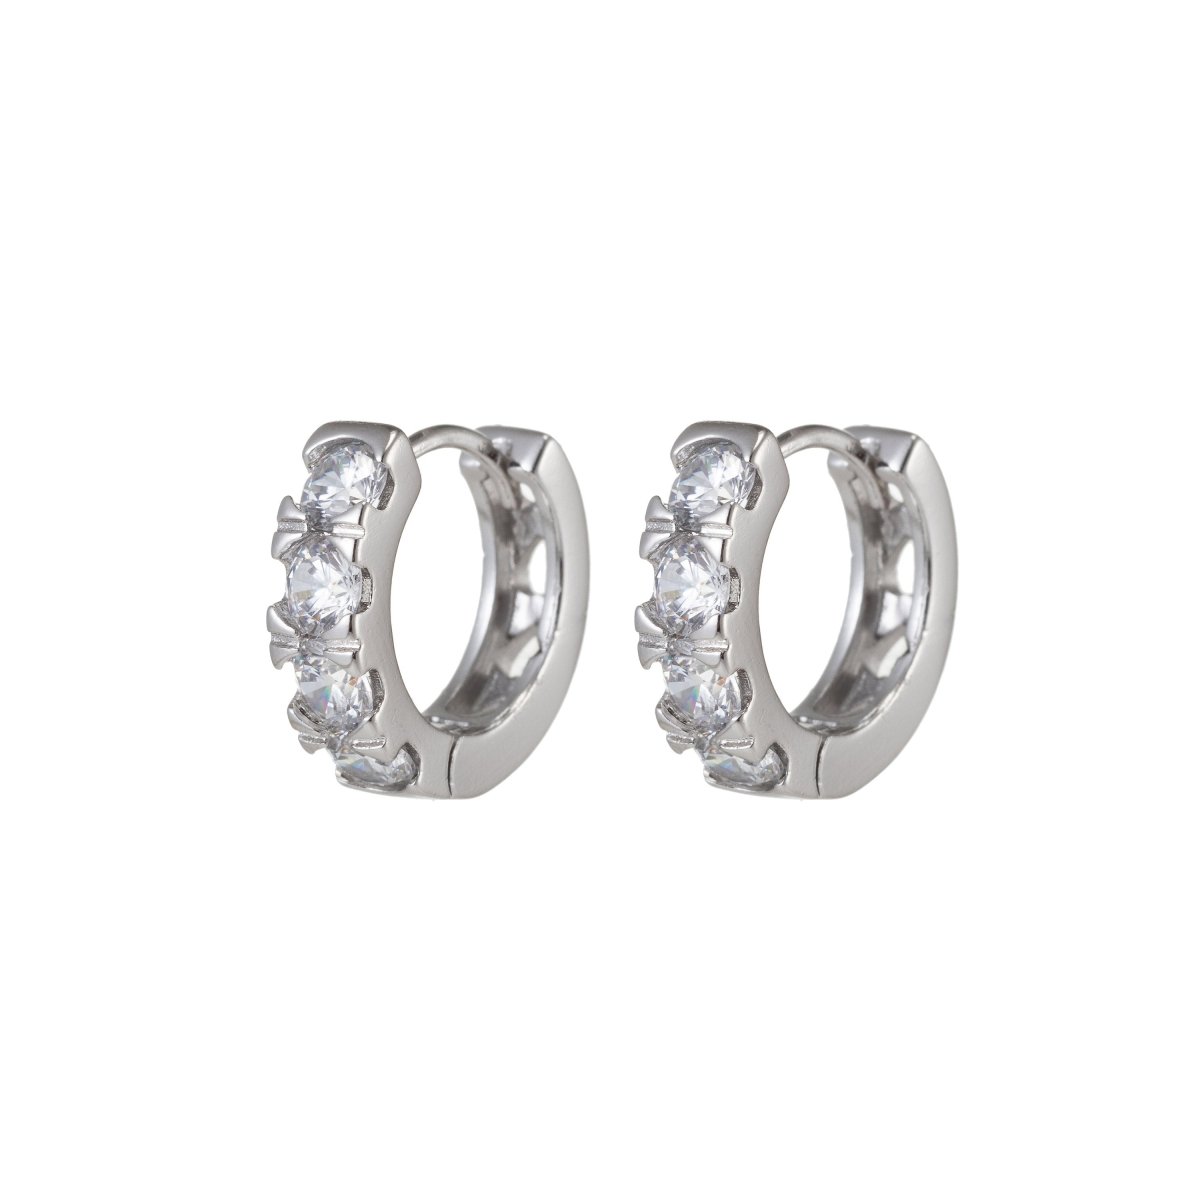 Four Diamond earrings Small Silver earrings hoops Dainty Earring for everyday earring Huggie Earring Q-043 - DLUXCA